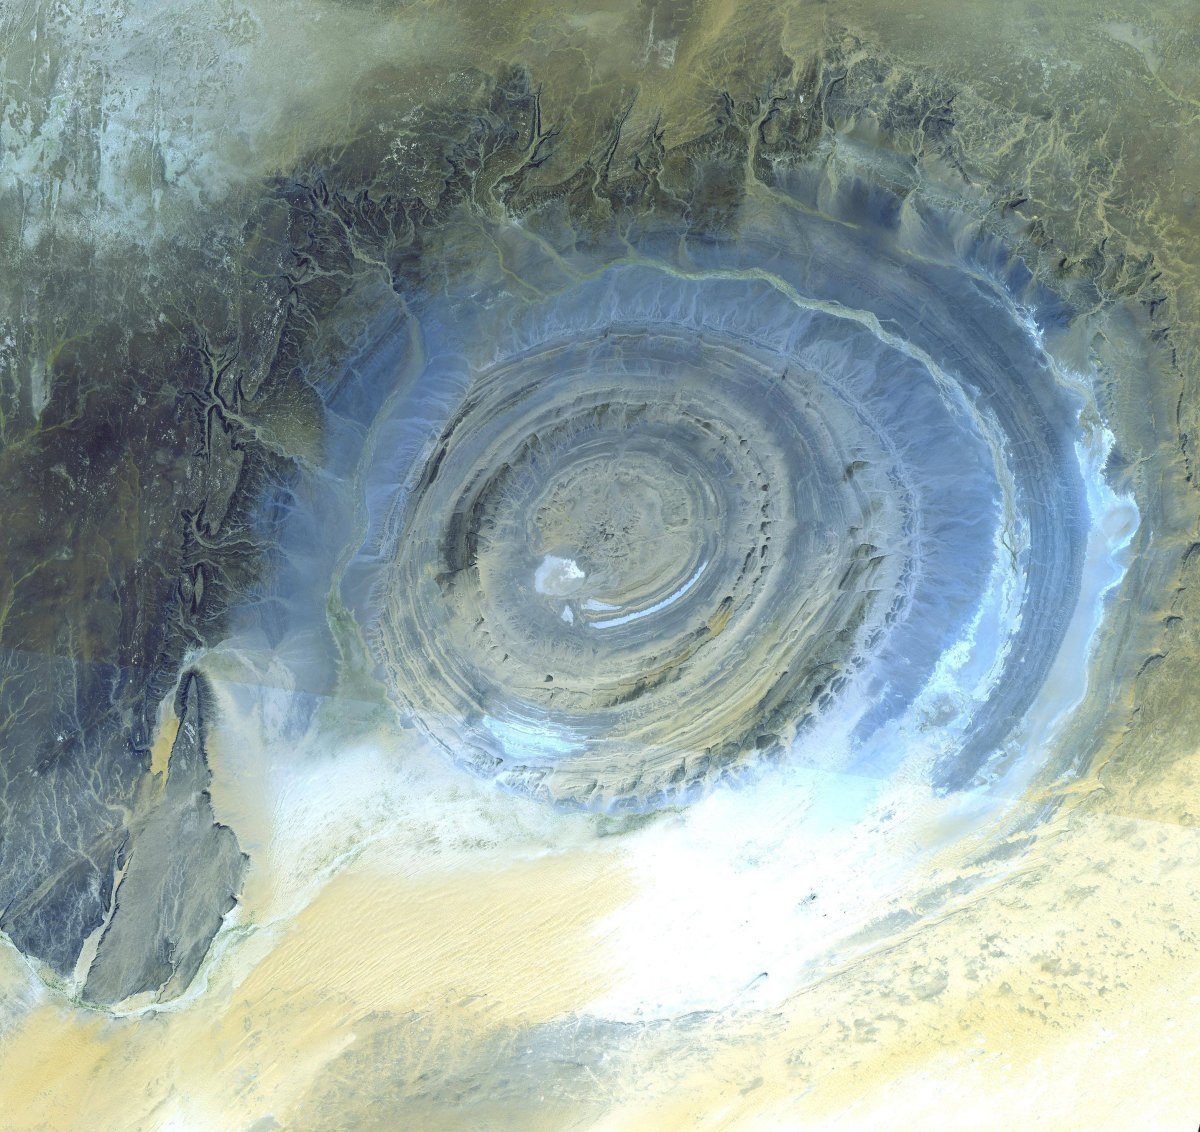 Eye of the Sahara, Mauritania